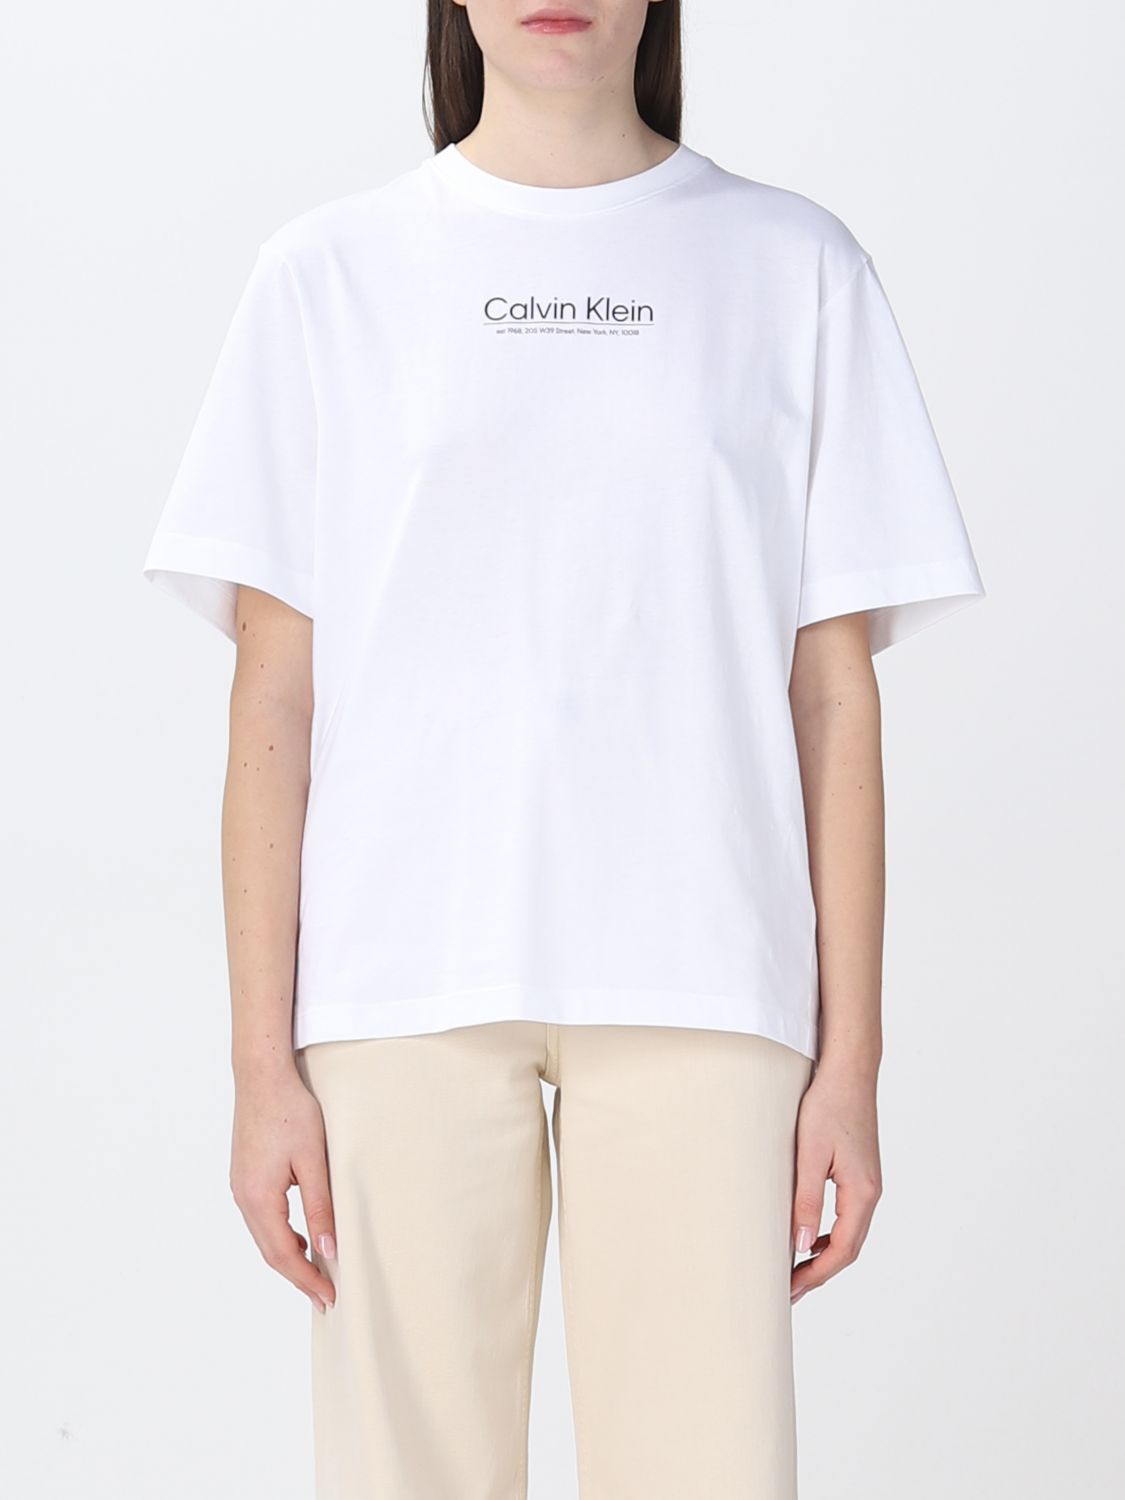 CALVIN KLEIN: t-shirt for woman - White | Calvin Klein t-shirt ...